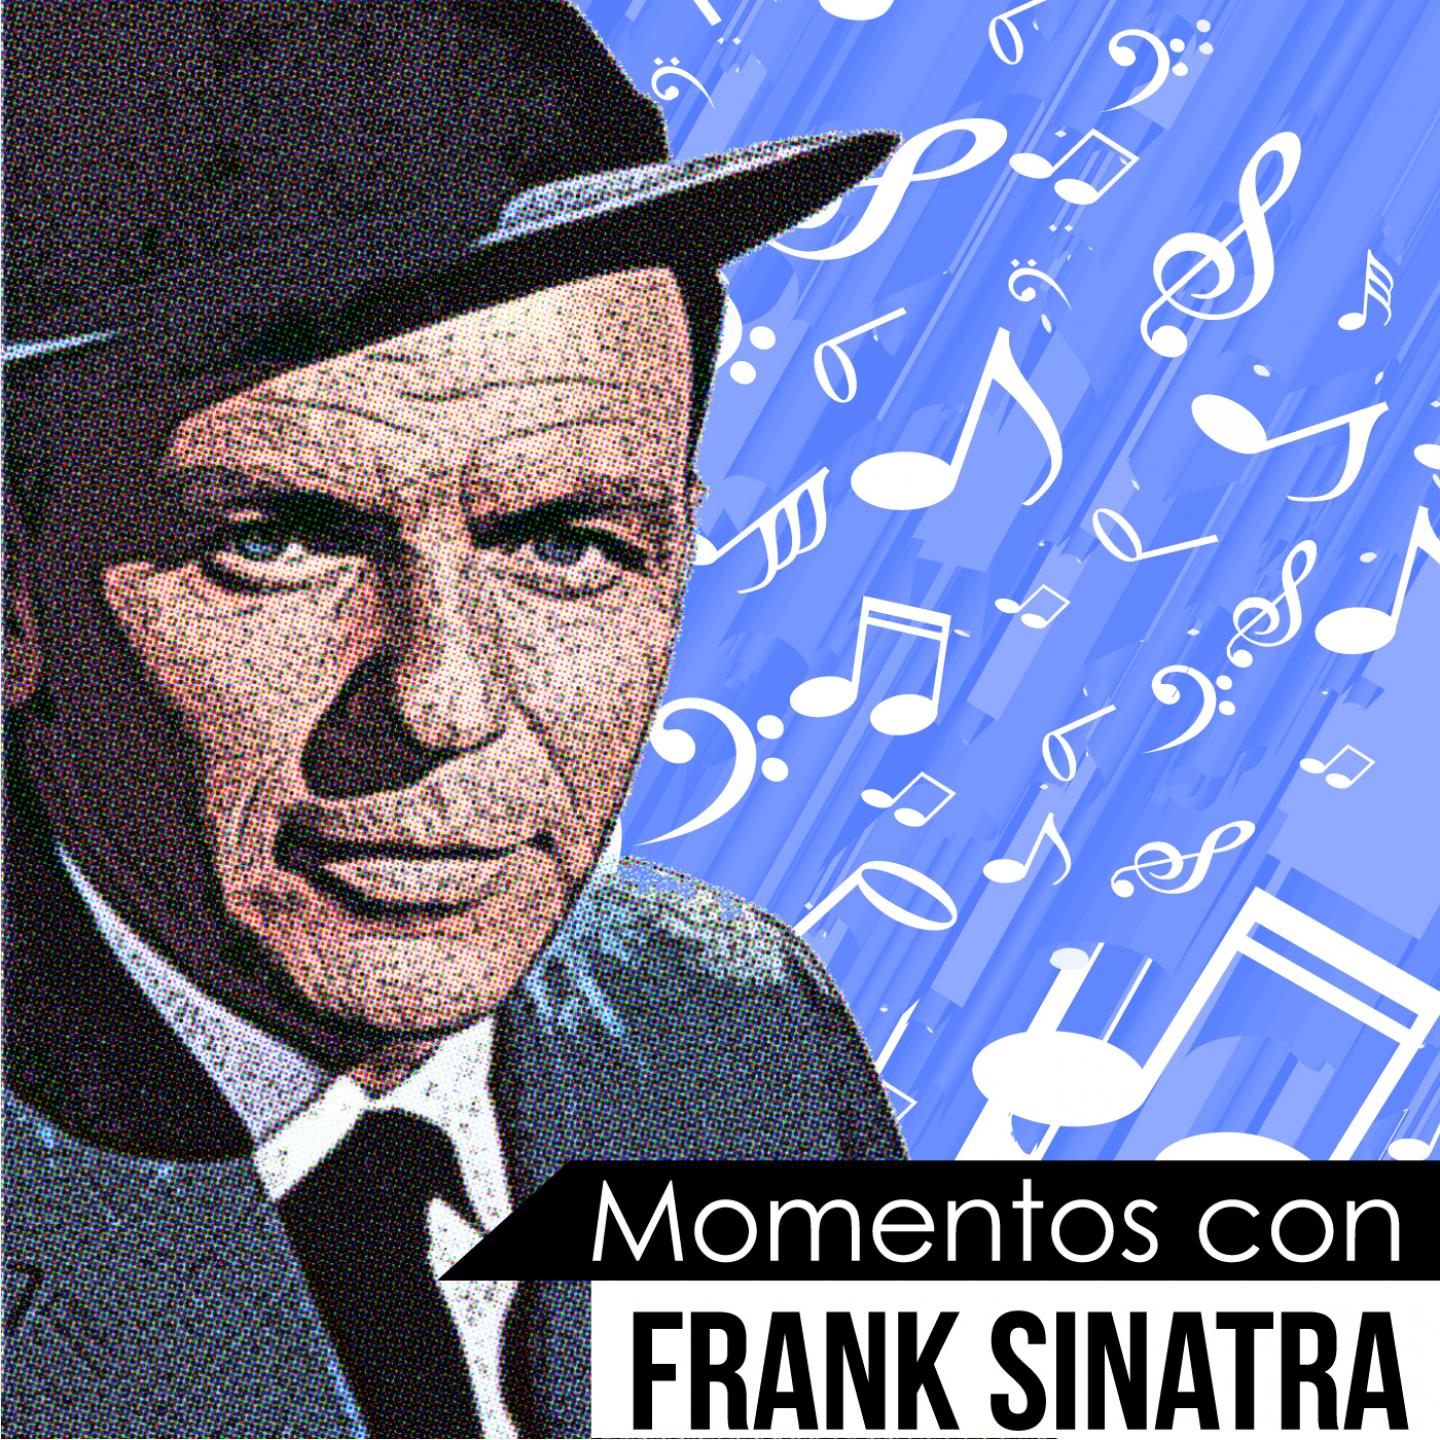 Meet Me at the Copa (Momentos Con Frank Sinatra)